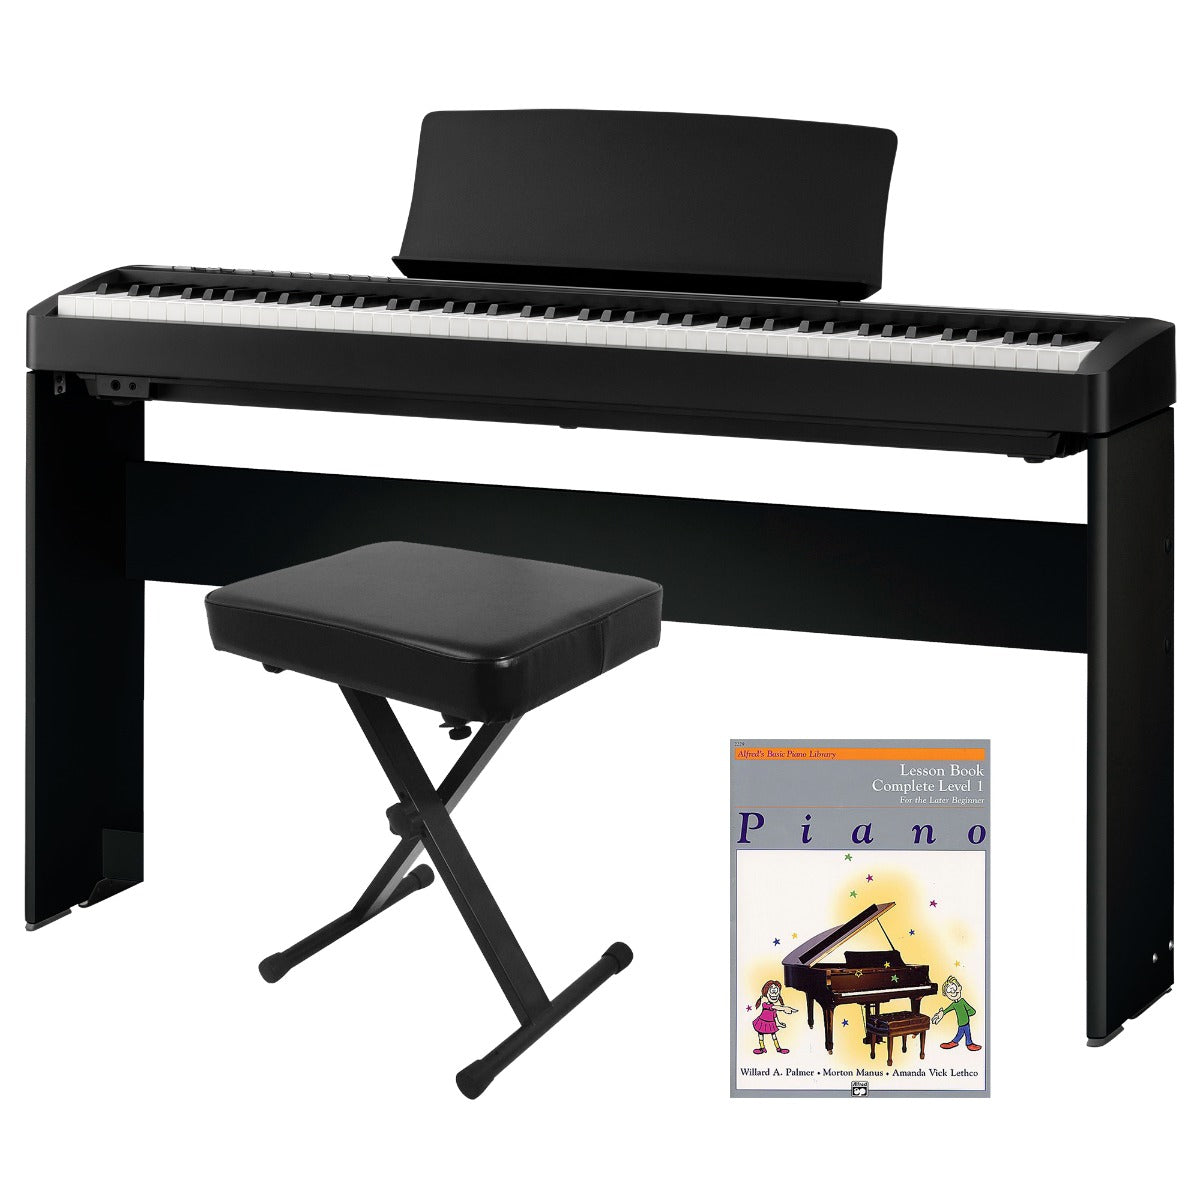 Kawai ES120 Portable Digital Piano - Black and included bundle accessories